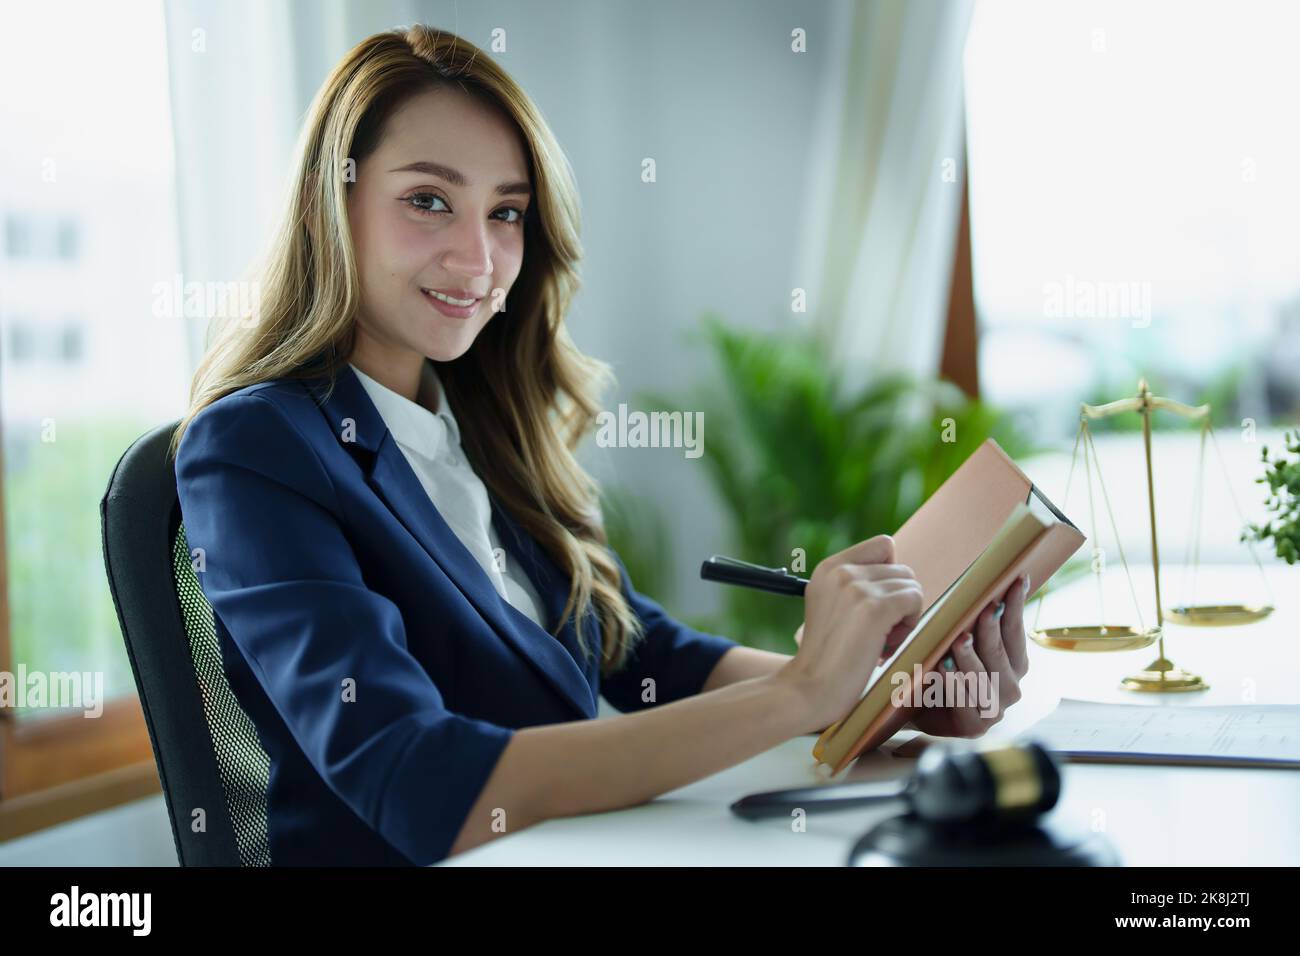 Porträt eines jungen asiatischen Rechtsanwalts, der eine Klage für einen Kunden studiert und dabei Notebooks und Papierkram auf einem Schreibtisch verwendet Stockfoto